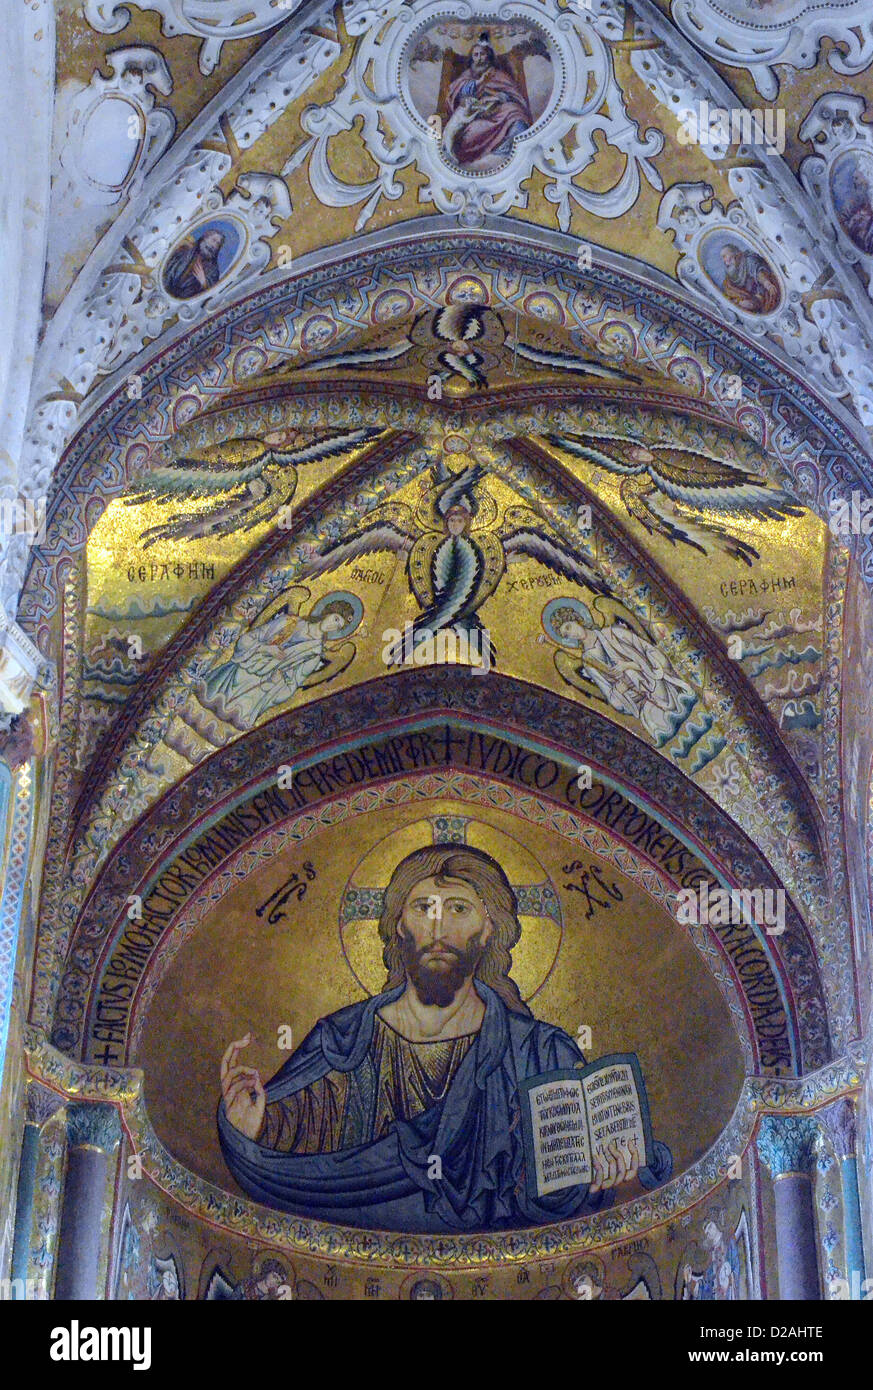 Cefalù Altstadt Christus Pantokrator in der Apsis der Kathedrale von Cefalù, Sizilien, Italien. Mosaik im byzantinischen Stil Stockfoto